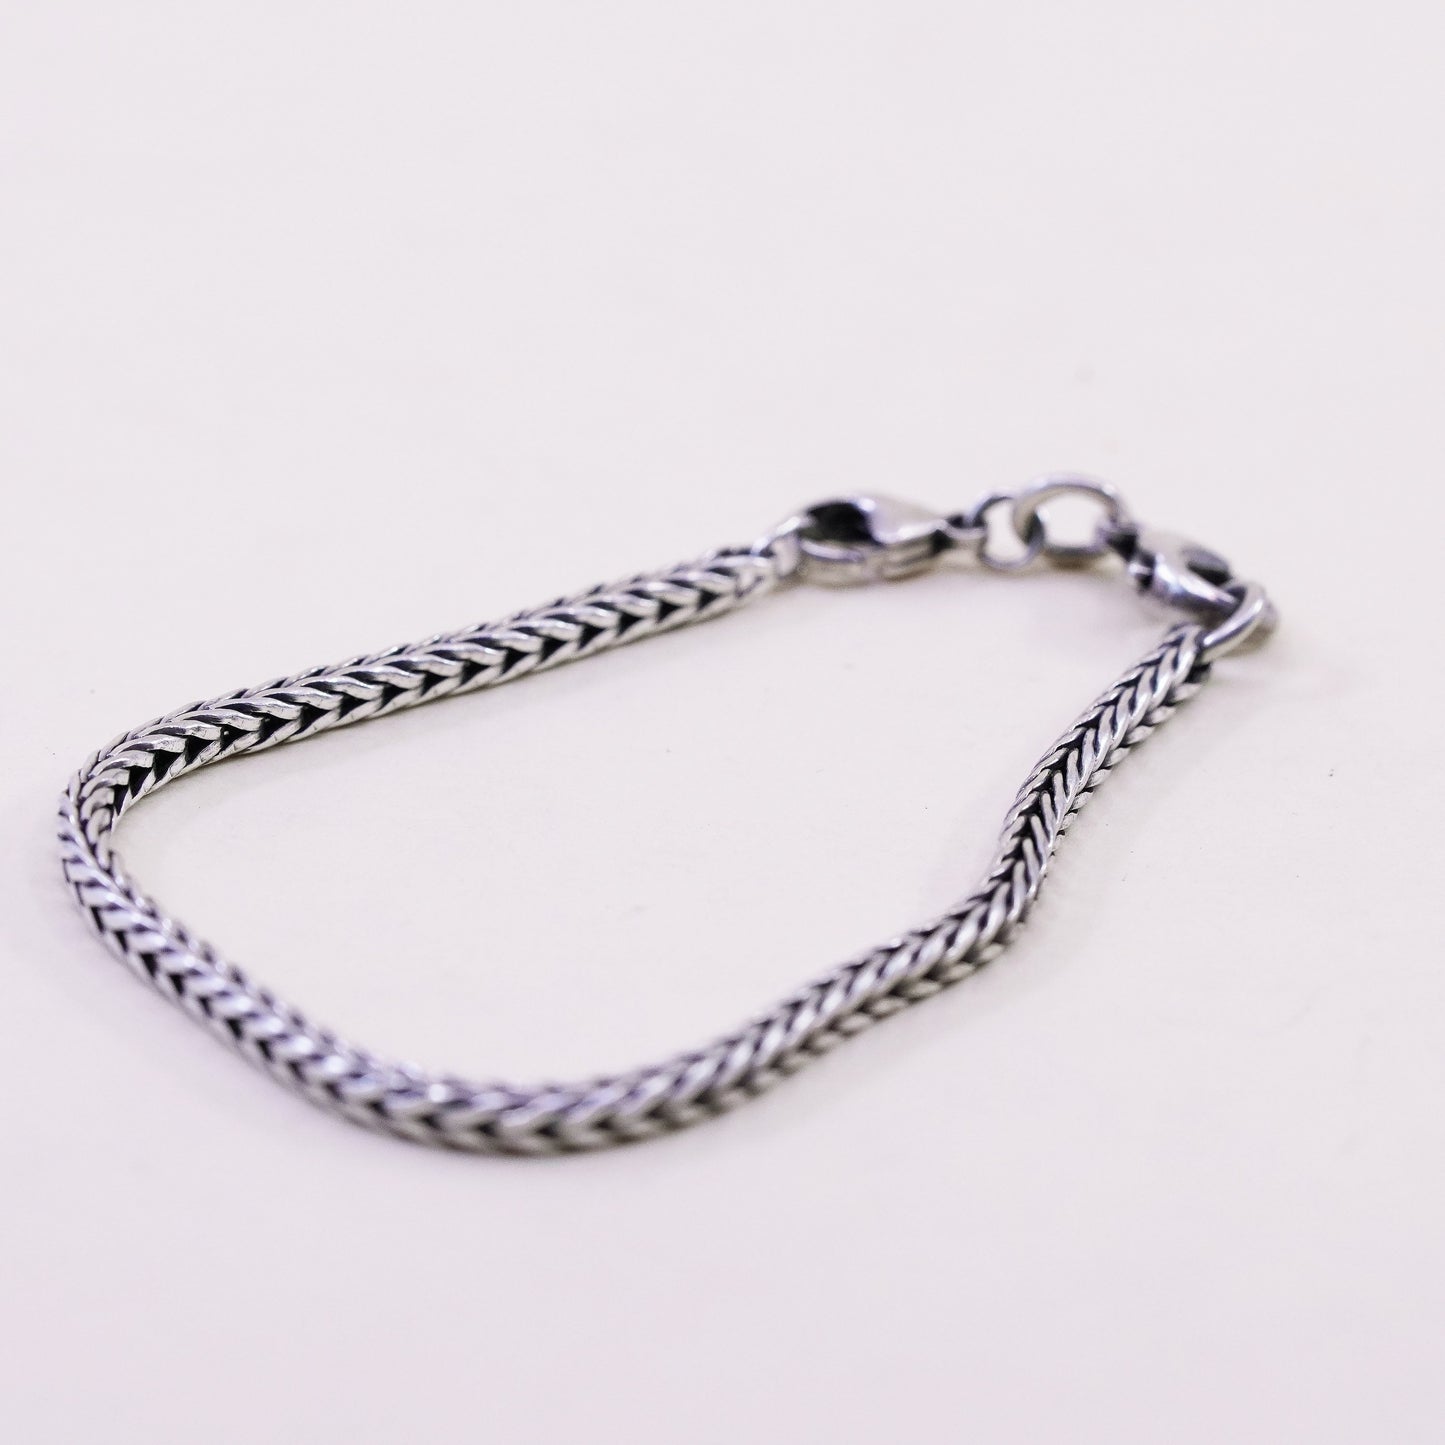 7”, trollbead LAA sterling silver handmade bracelet, bold 925 wheat chain